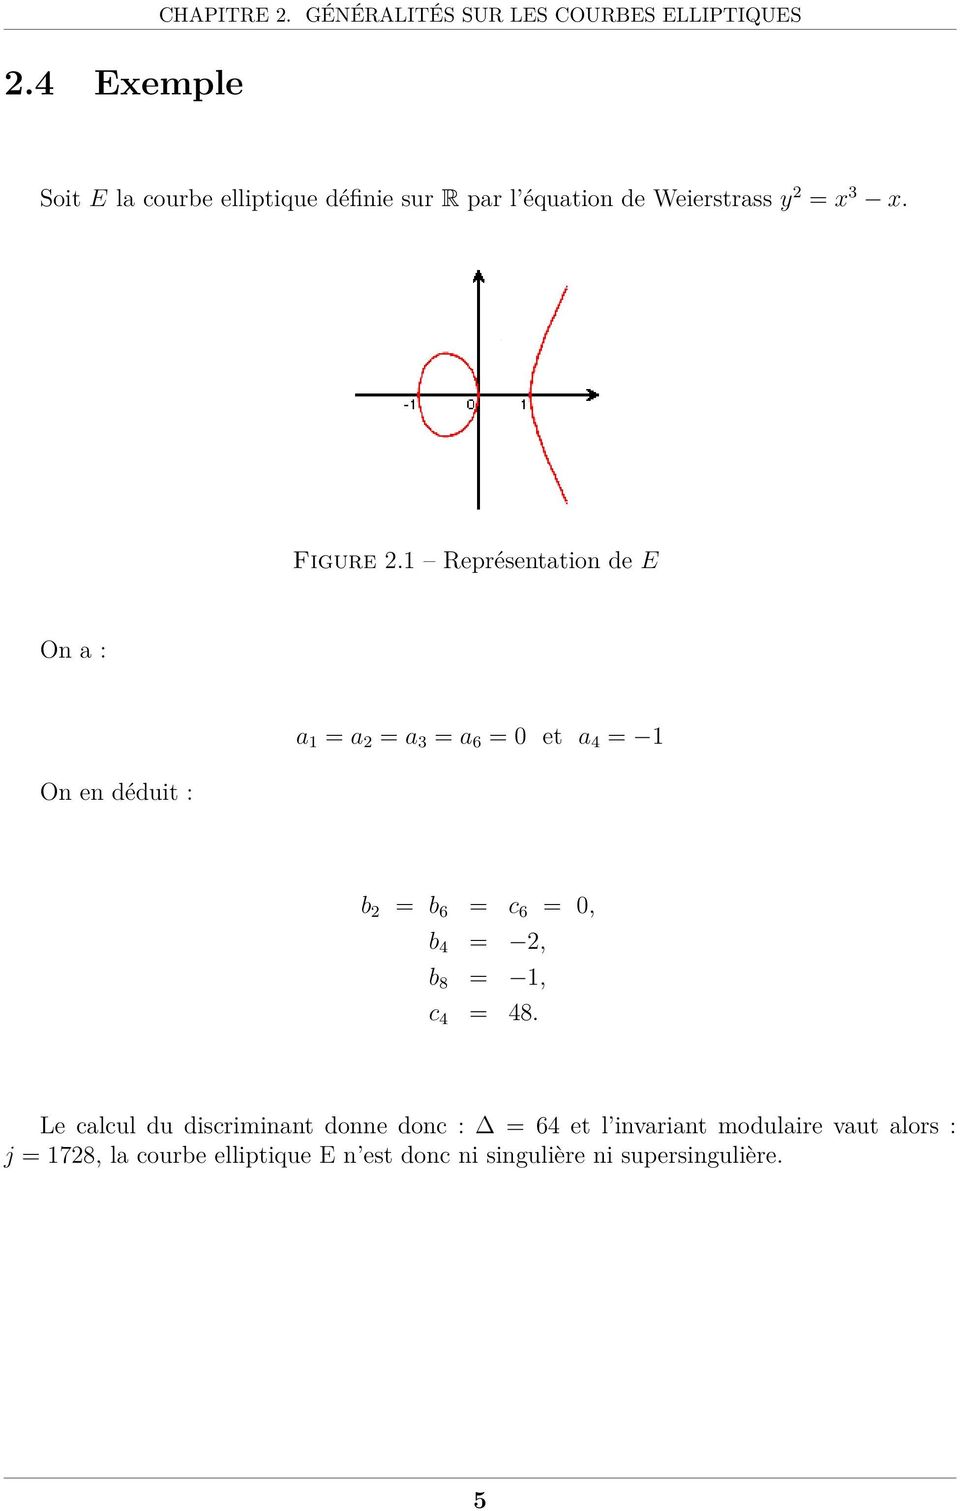 1 Représentation de E On a : On en déduit : a 1 = a 2 = a 3 = a 6 = 0 et a 4 = 1 b 2 = b 6 = c 6 = 0, b 4 = 2, b